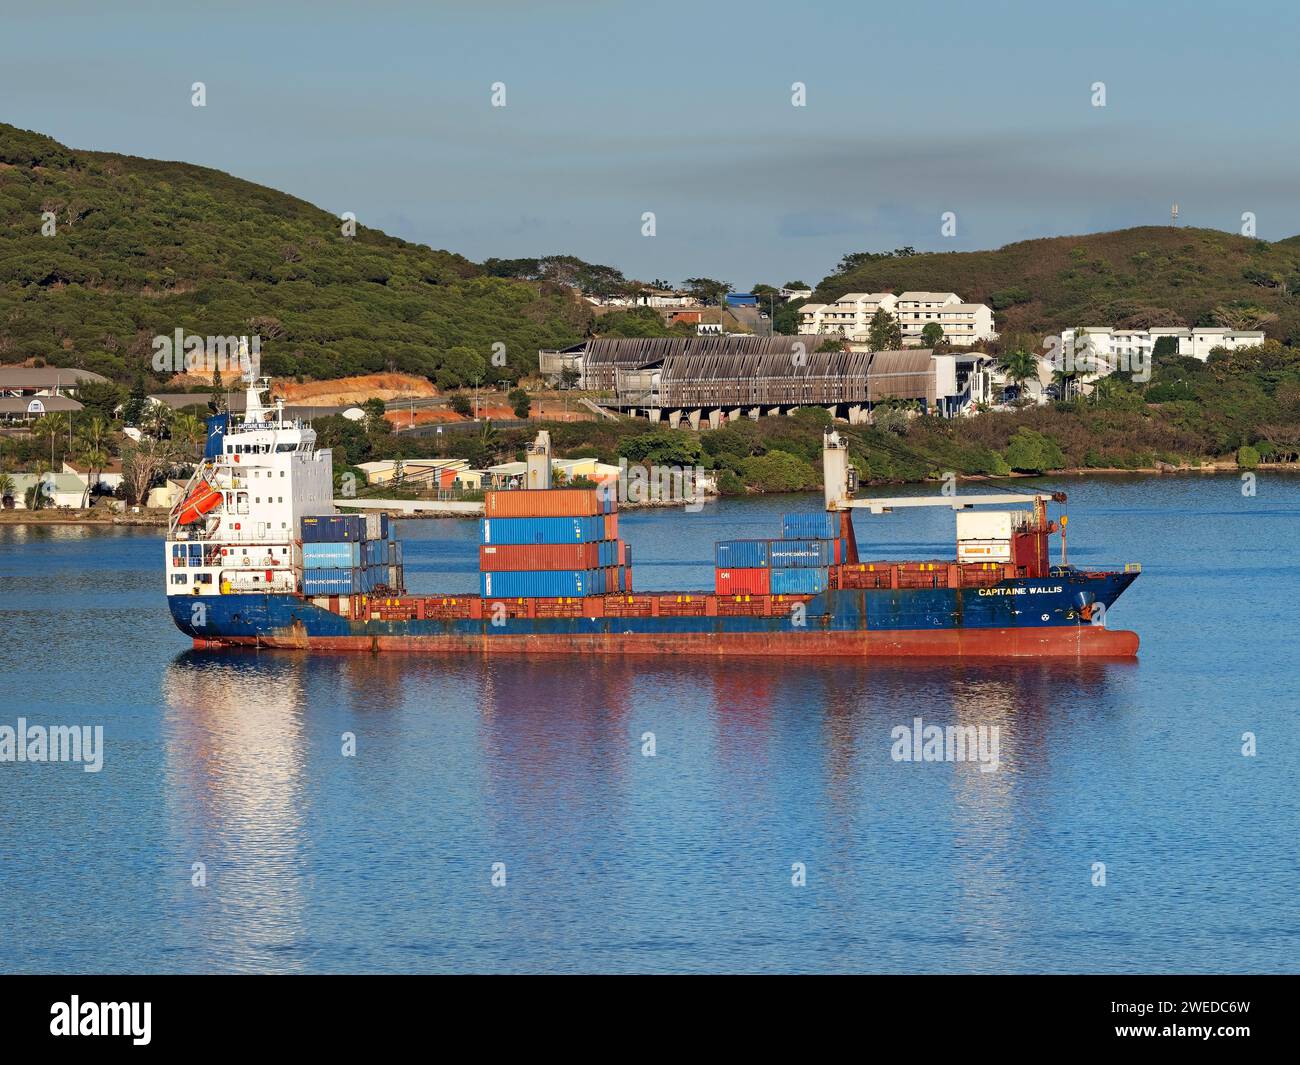 Industrie maritime / porte-conteneurs, Capitaine Wallis dans le port de Nouméa, Nouvelle-Calédonie. Banque D'Images